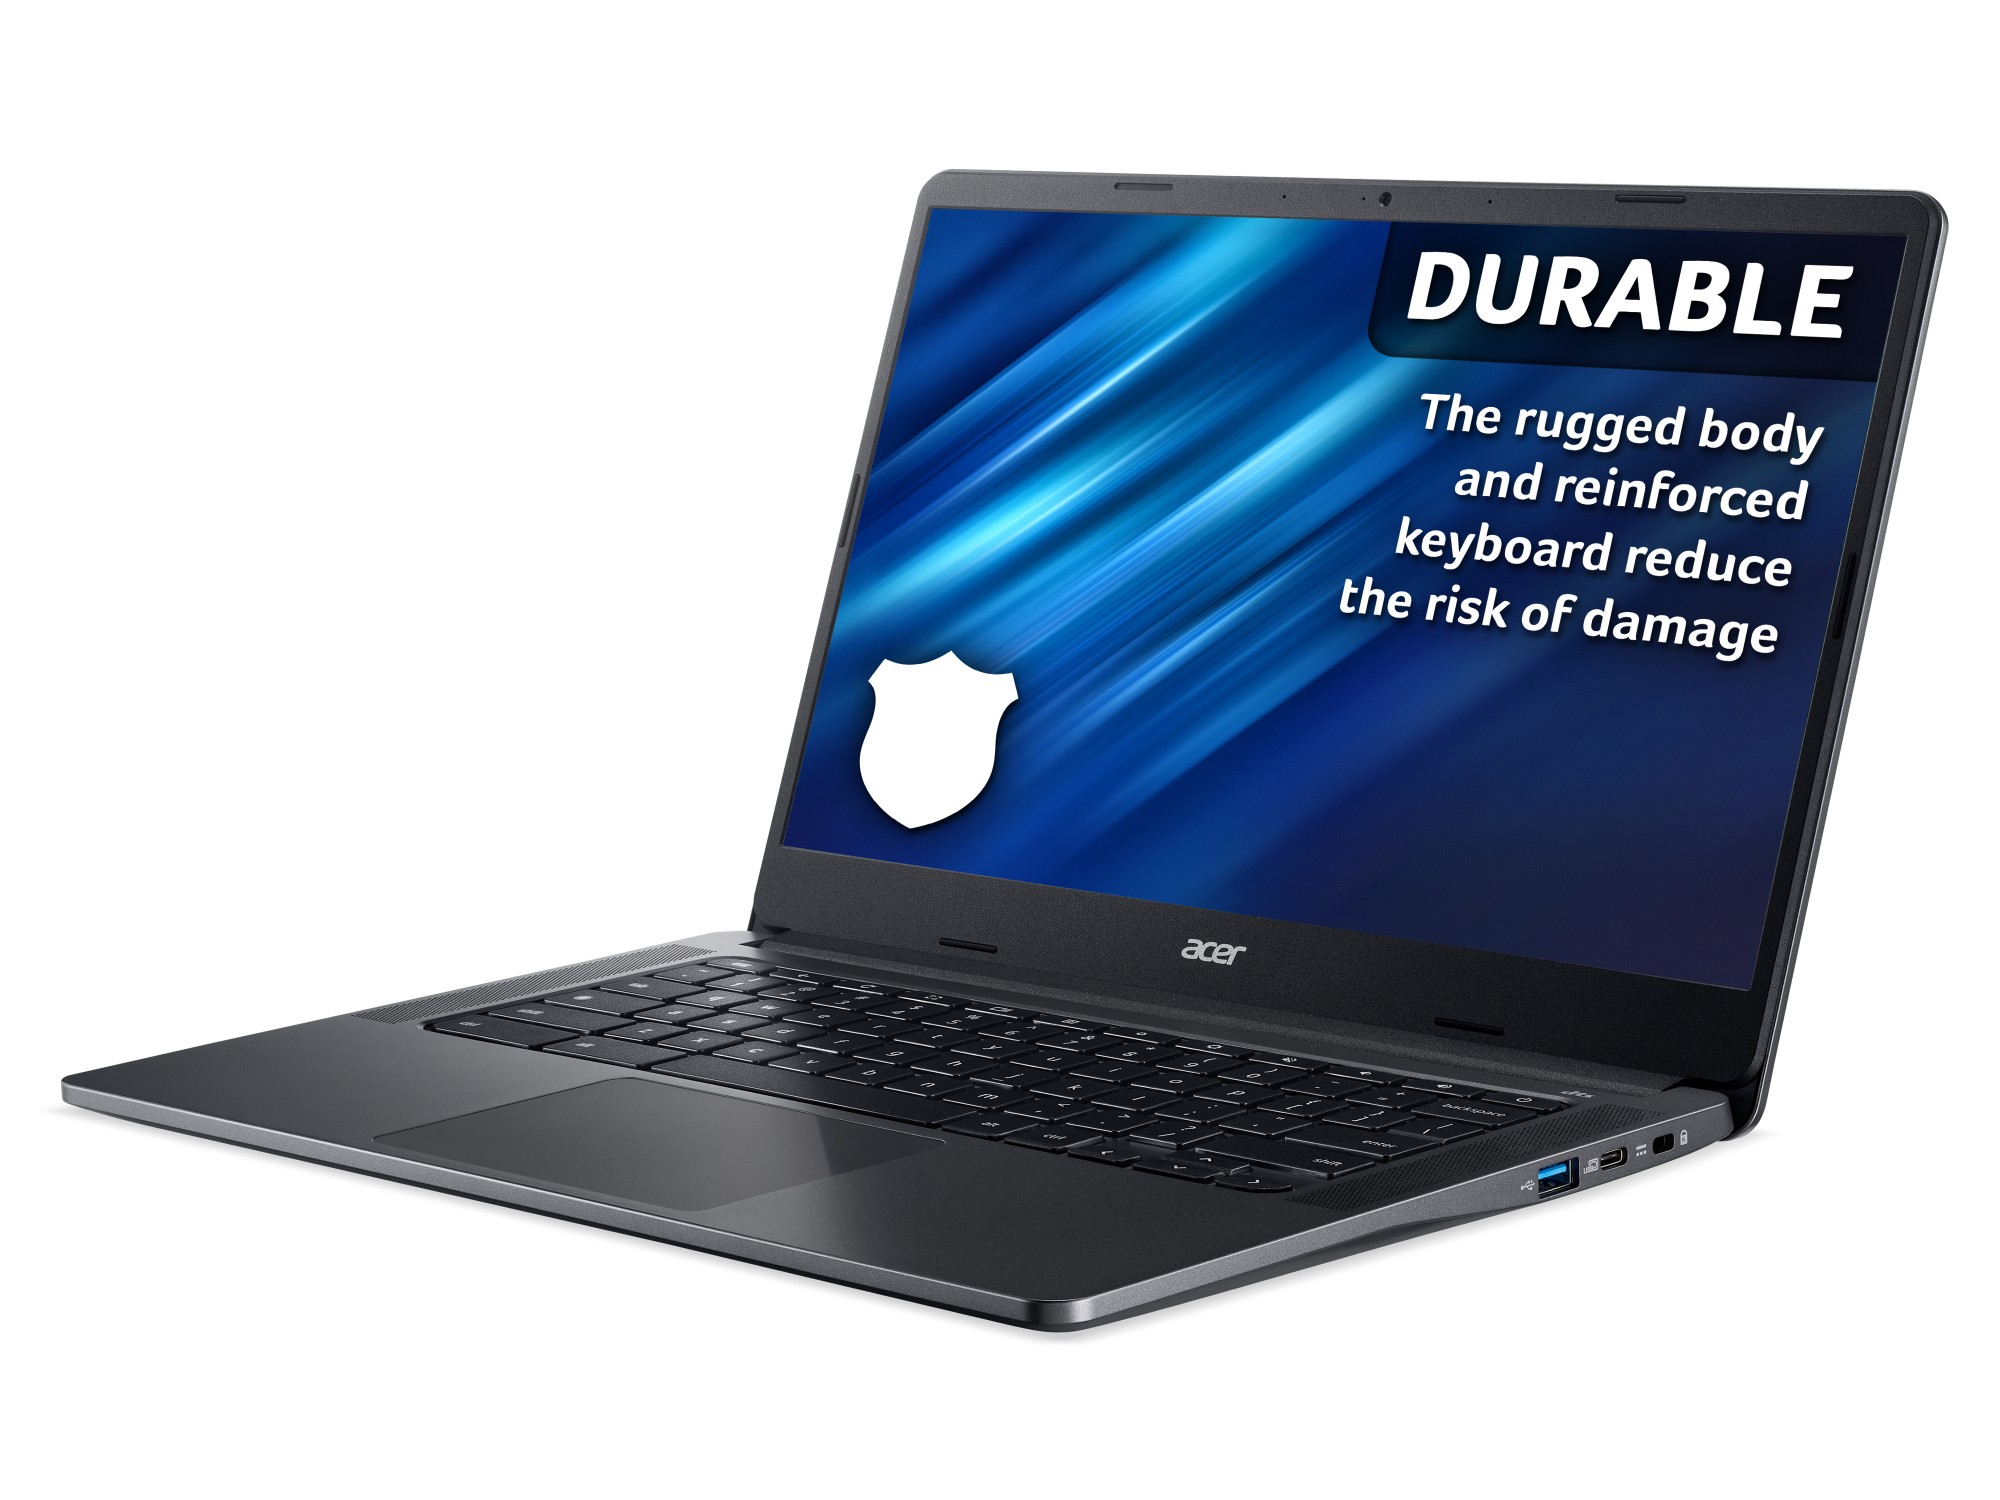 Acer Chromebook C934 14" 128GB/8GB N60000 FHD